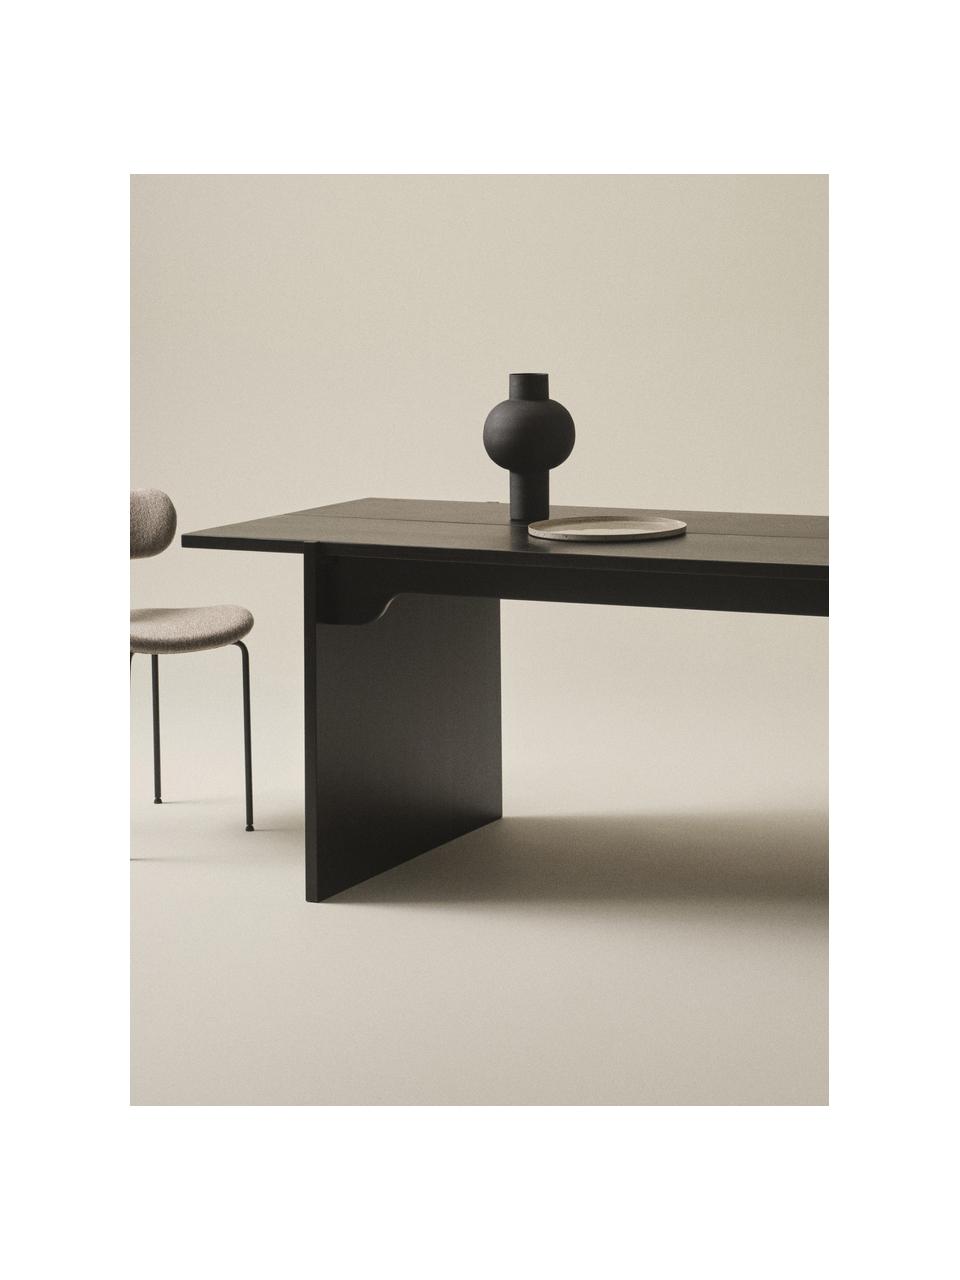 Jedálenský stôl z borovicového drevo Tottori, 250 x 84 cm, Borovicové drevo, Borovicové drevo, čierna lakované, Š 250 x H 84 cm